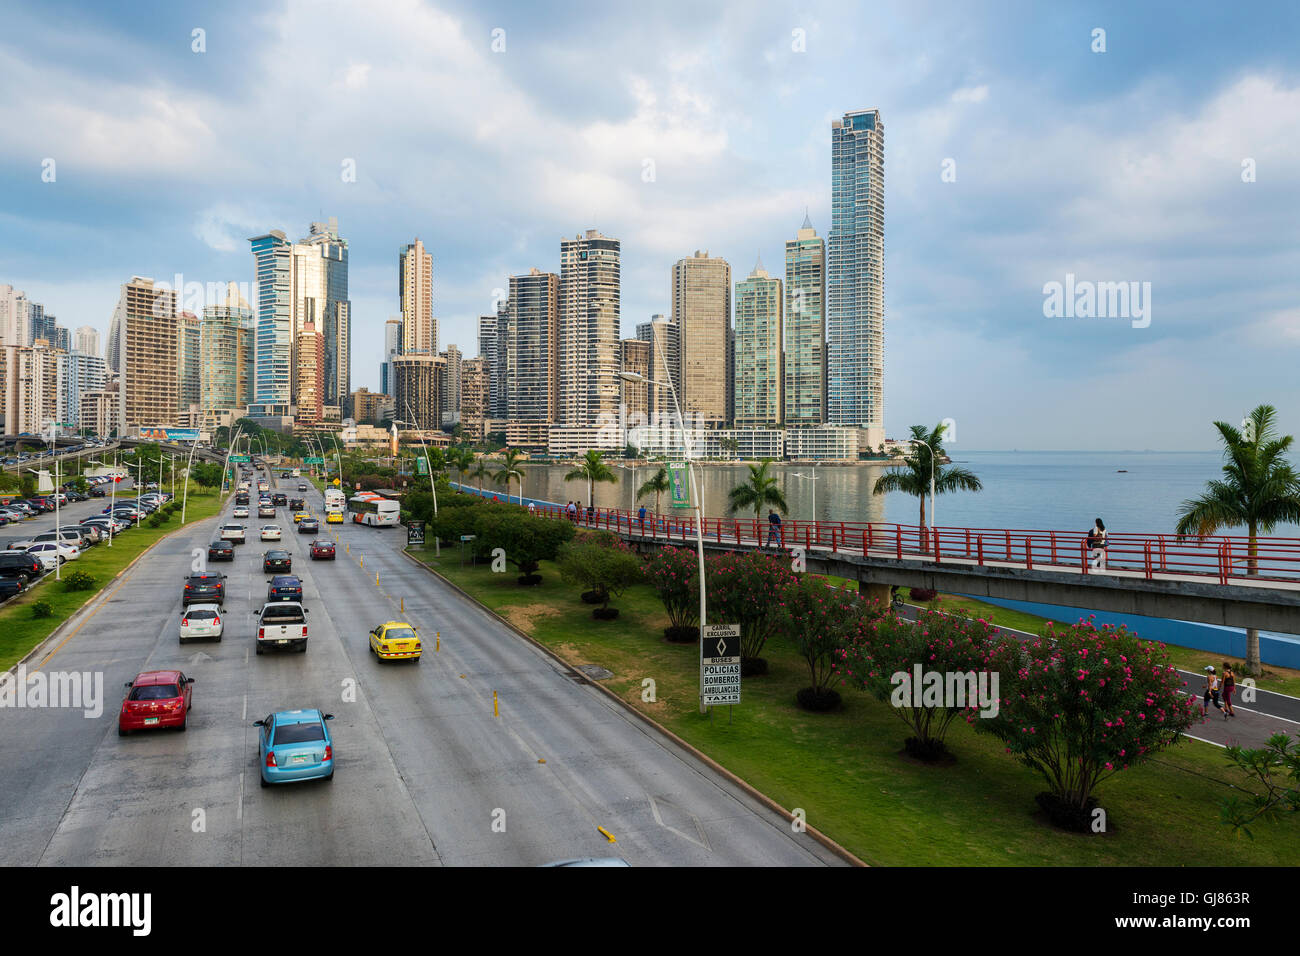 Ciudad de Panamá, Panamá, 18 de marzo, 2014: Vista del distrito financiero y del mar en la Ciudad de Panamá, Panamá. Foto de stock